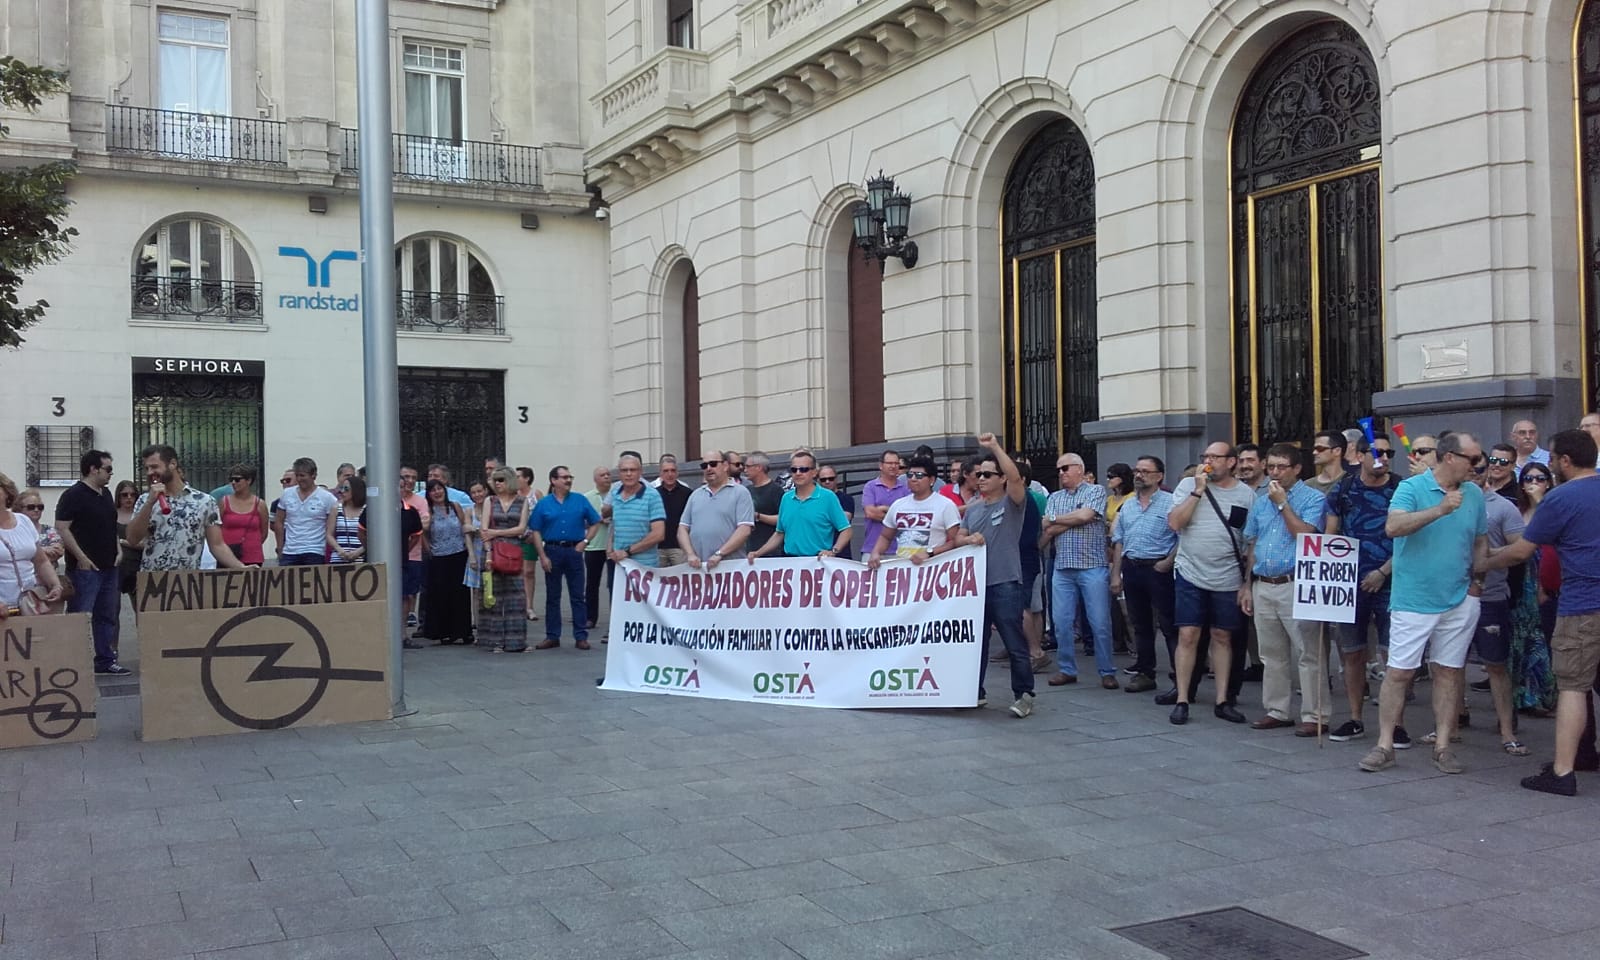 Los trabajadores de OPEL se concentran en Zaragoza